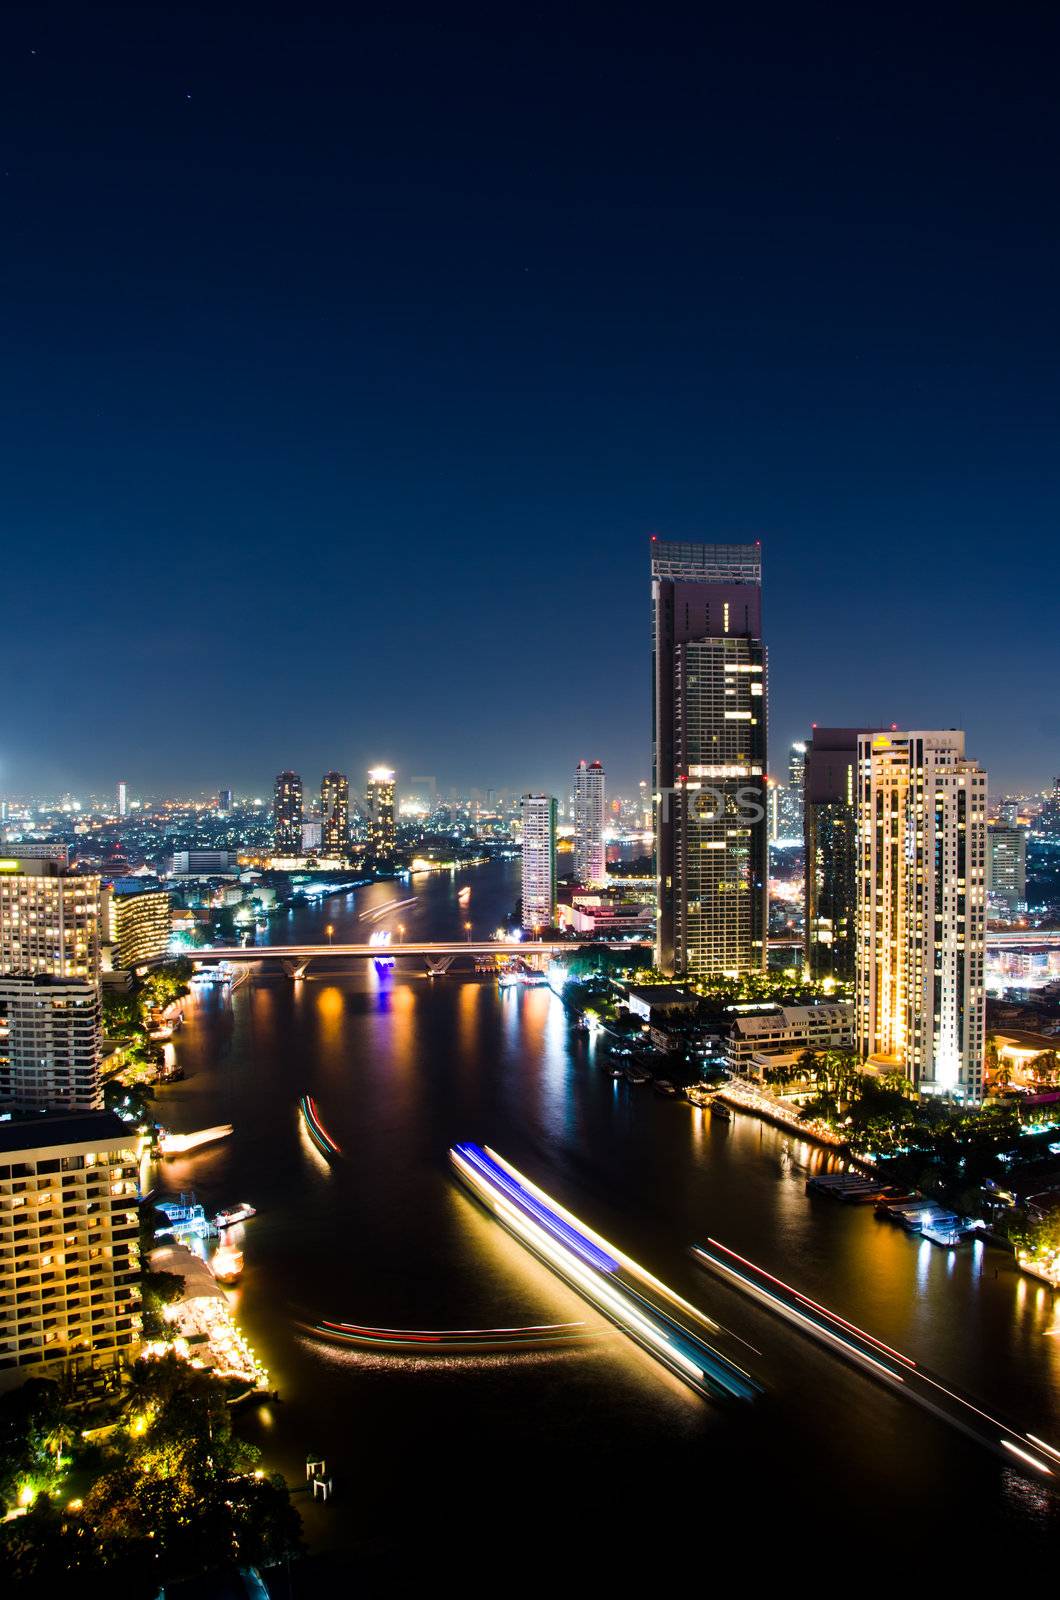 City center of Bangkok Thailand at night.